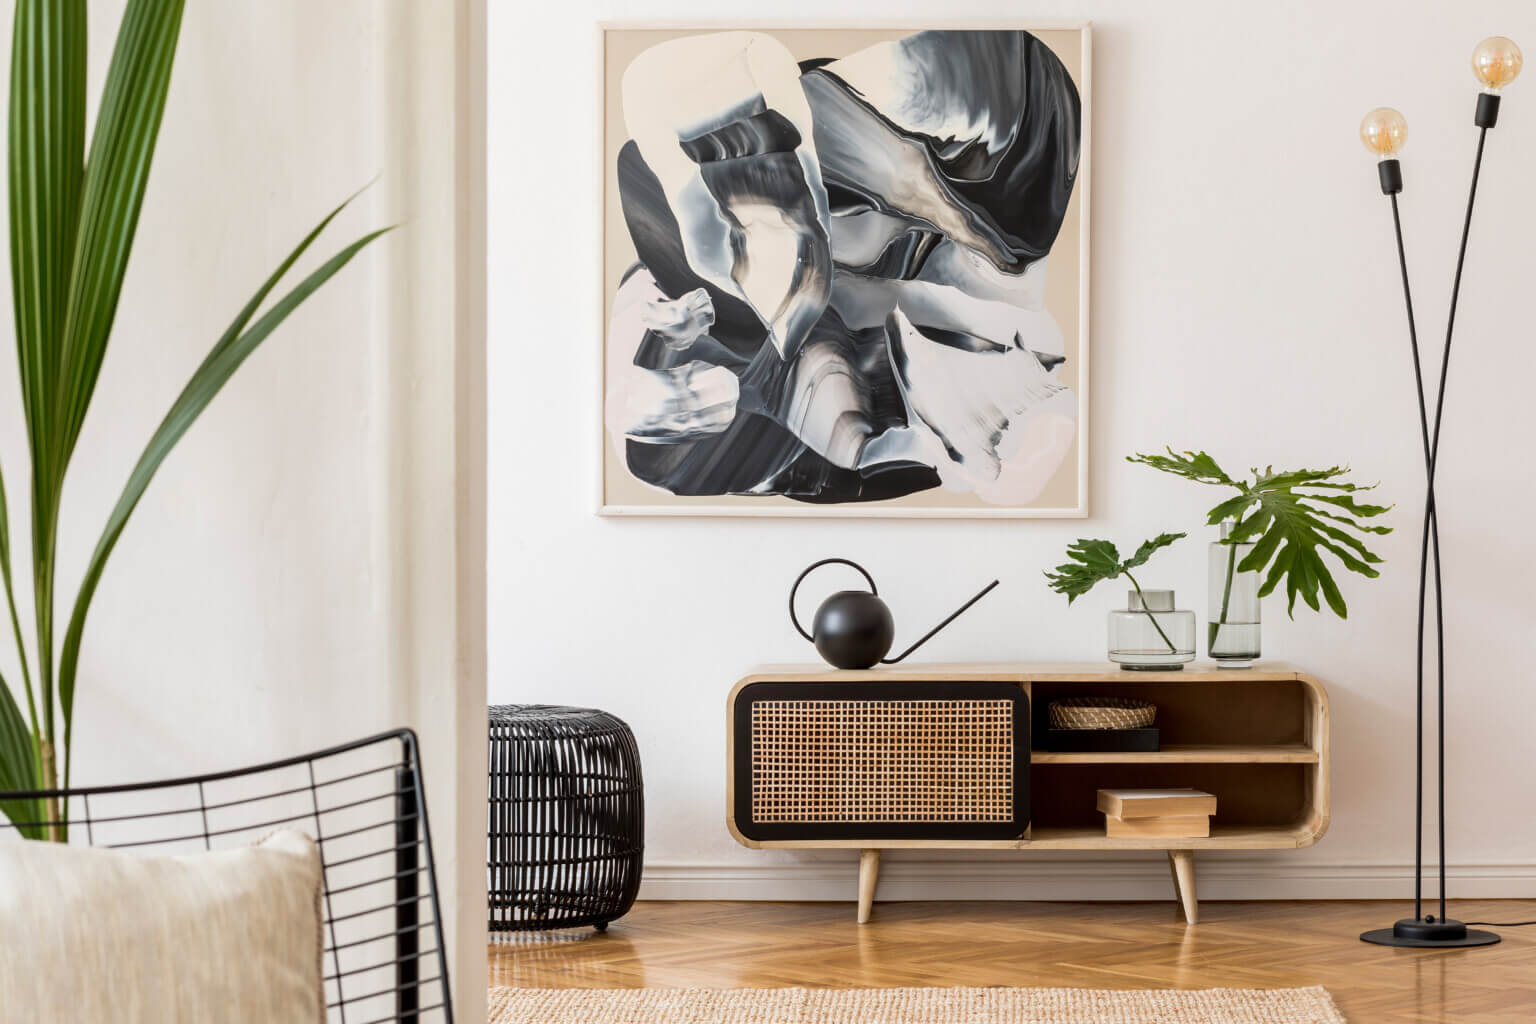 Gynok - QnA & Blogging Platform - 10 Tips to Modernize your Home Interiors